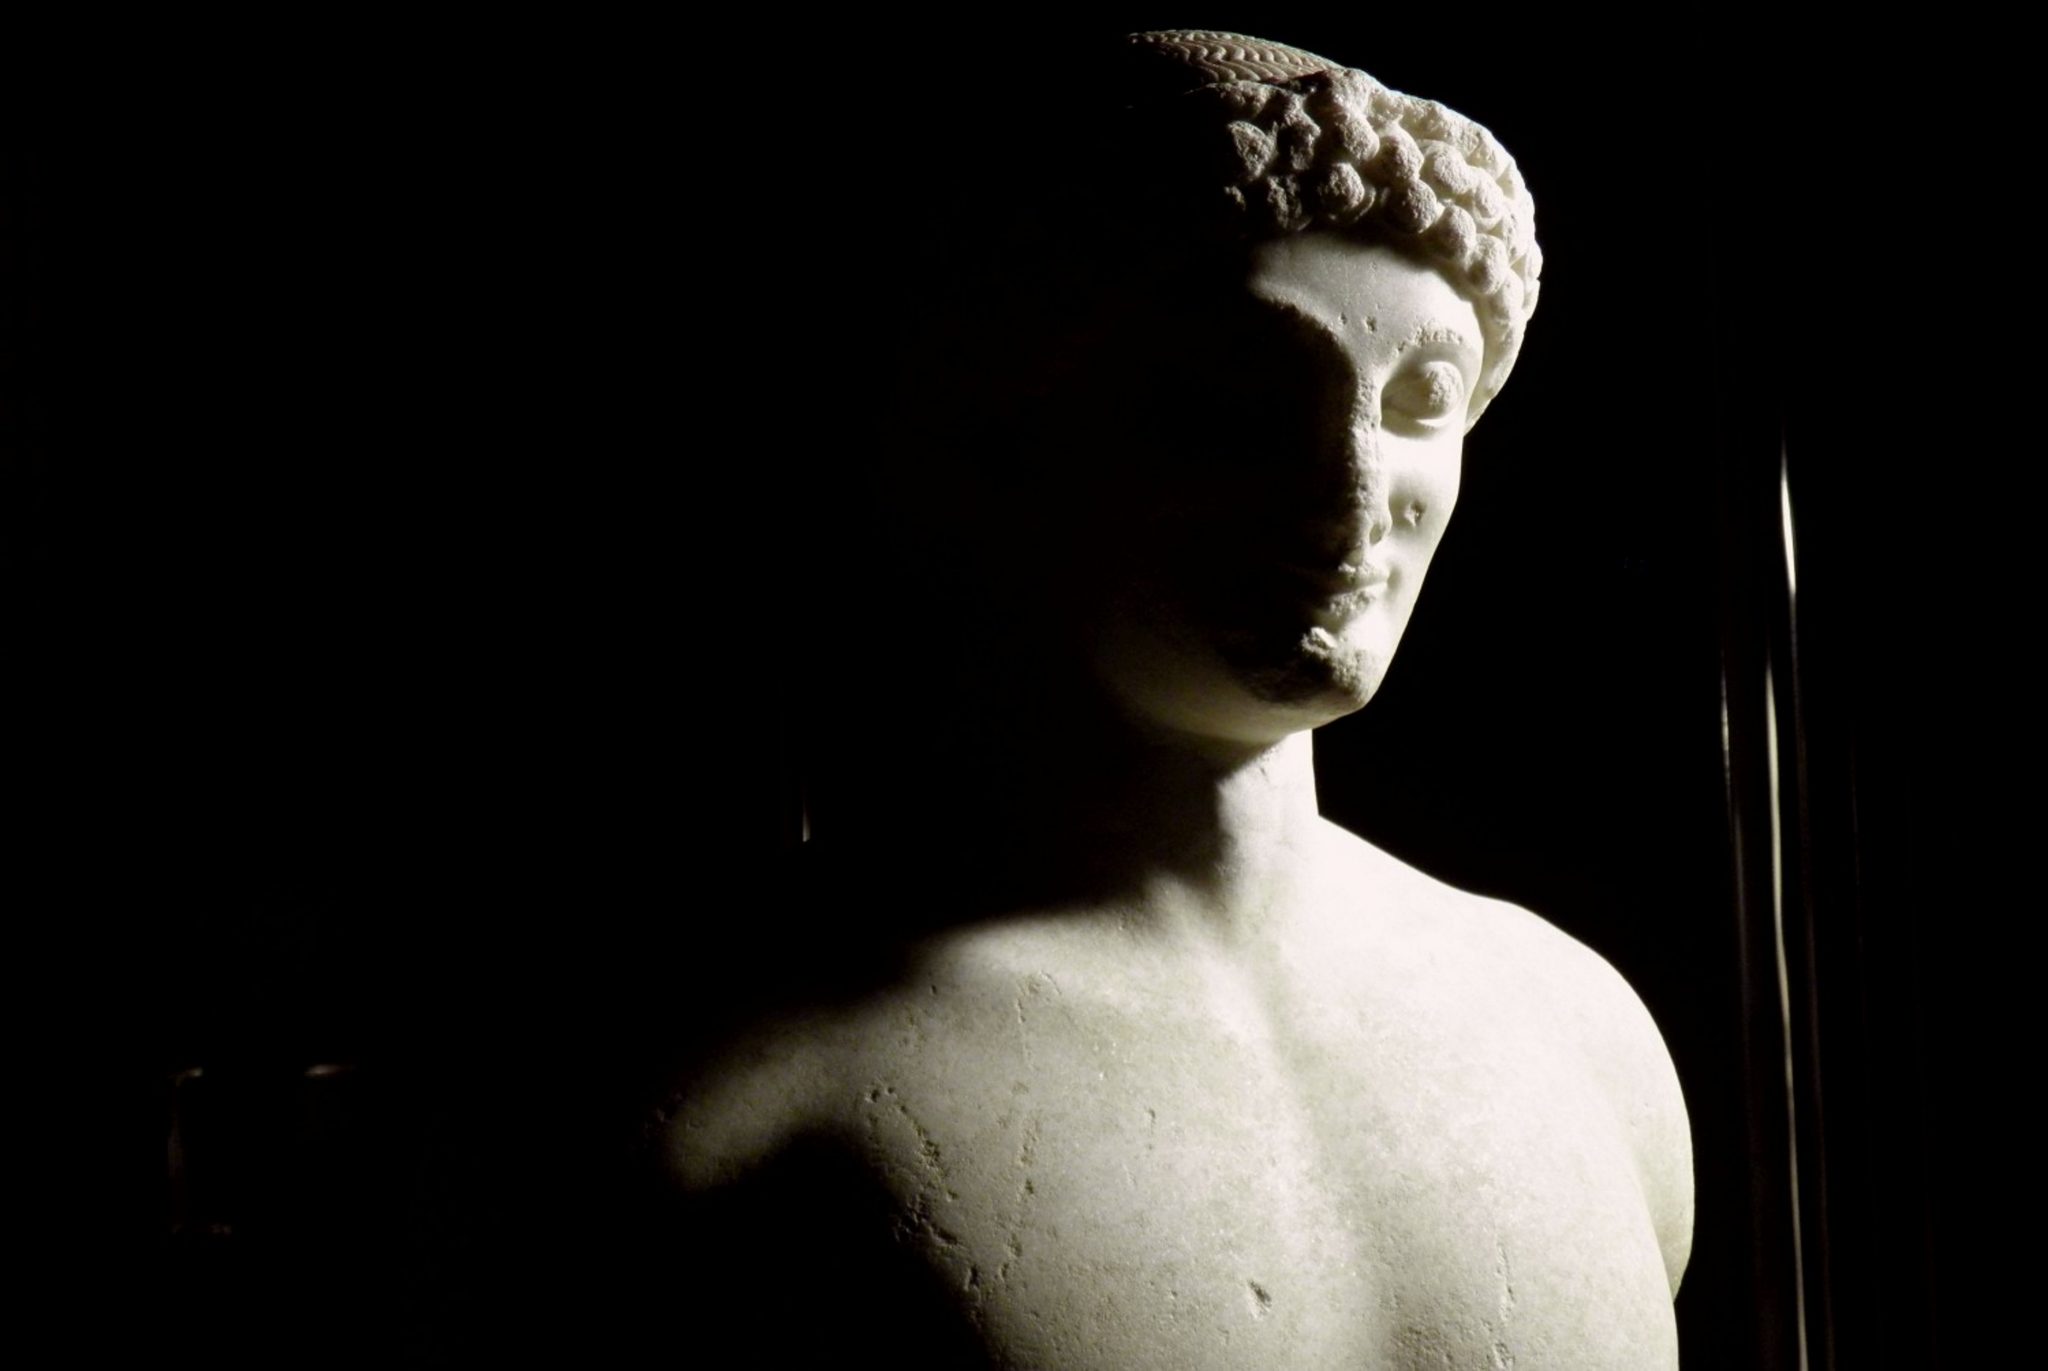 Il kouros di Lentini ritrova la sua testa. In mostra a Catania la statua greca riassemblata